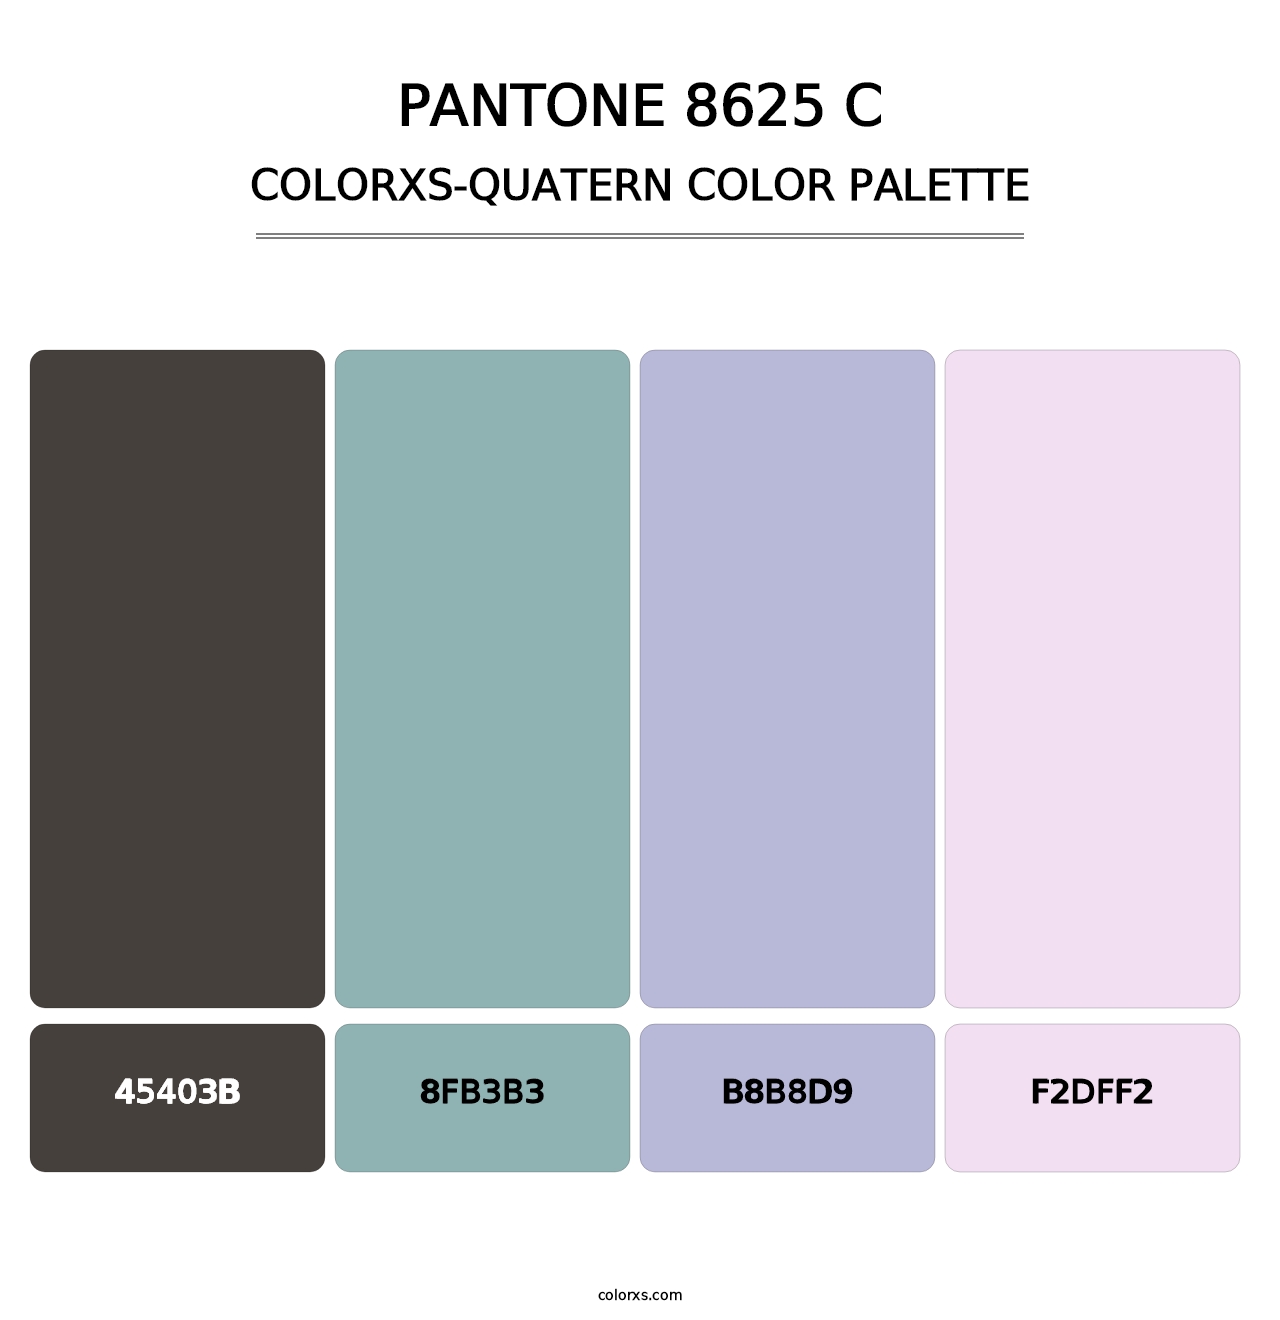 PANTONE 8625 C - Colorxs Quatern Palette